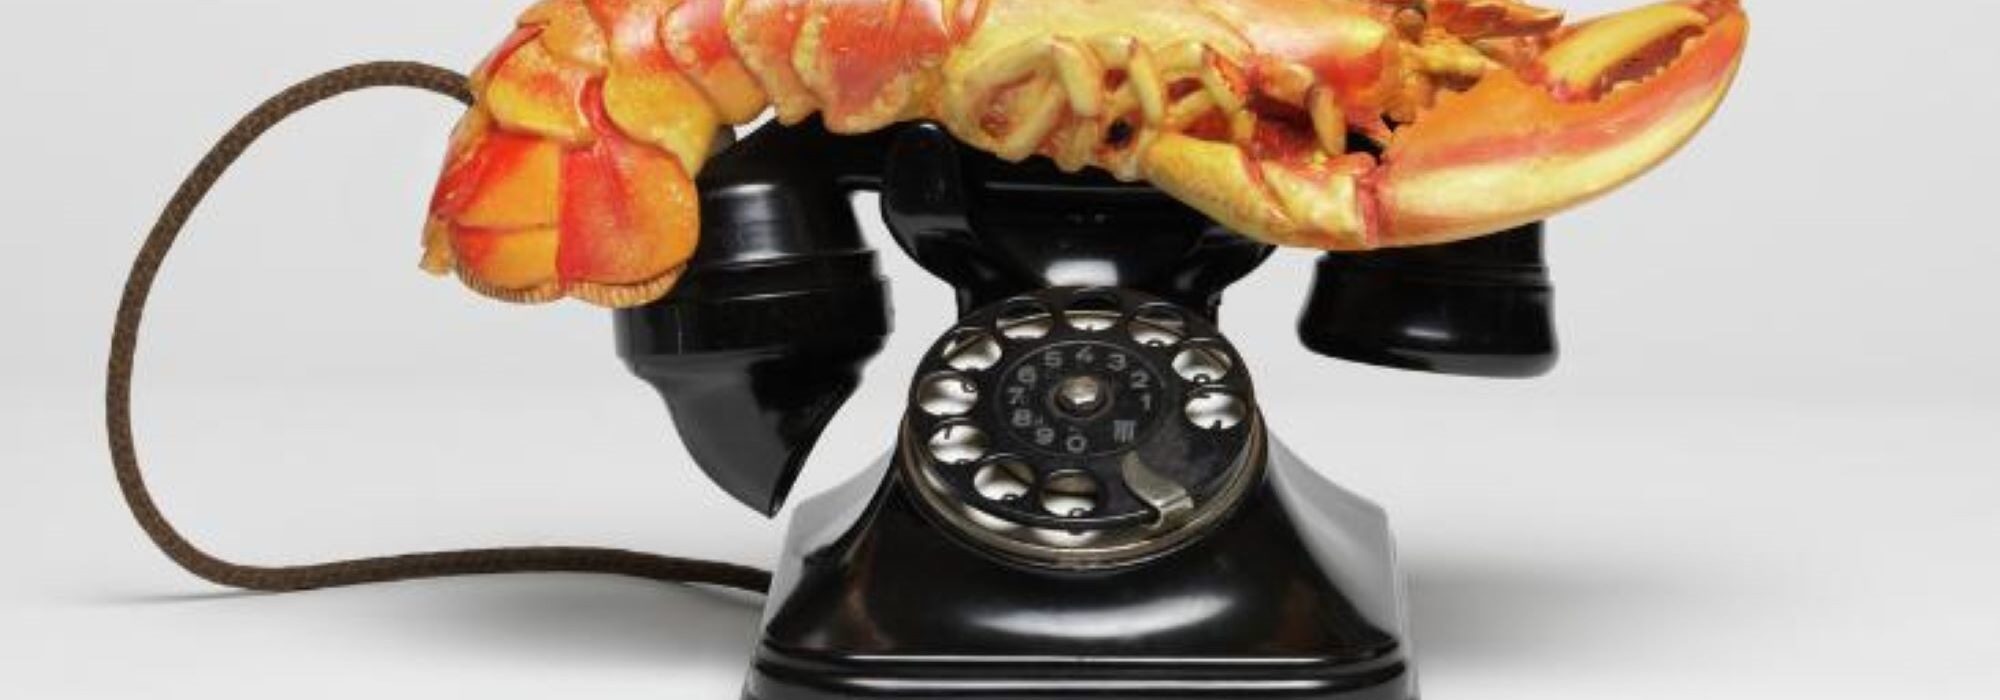 Imagem: Lobster Telephone (Salvador Dalí, 1938)